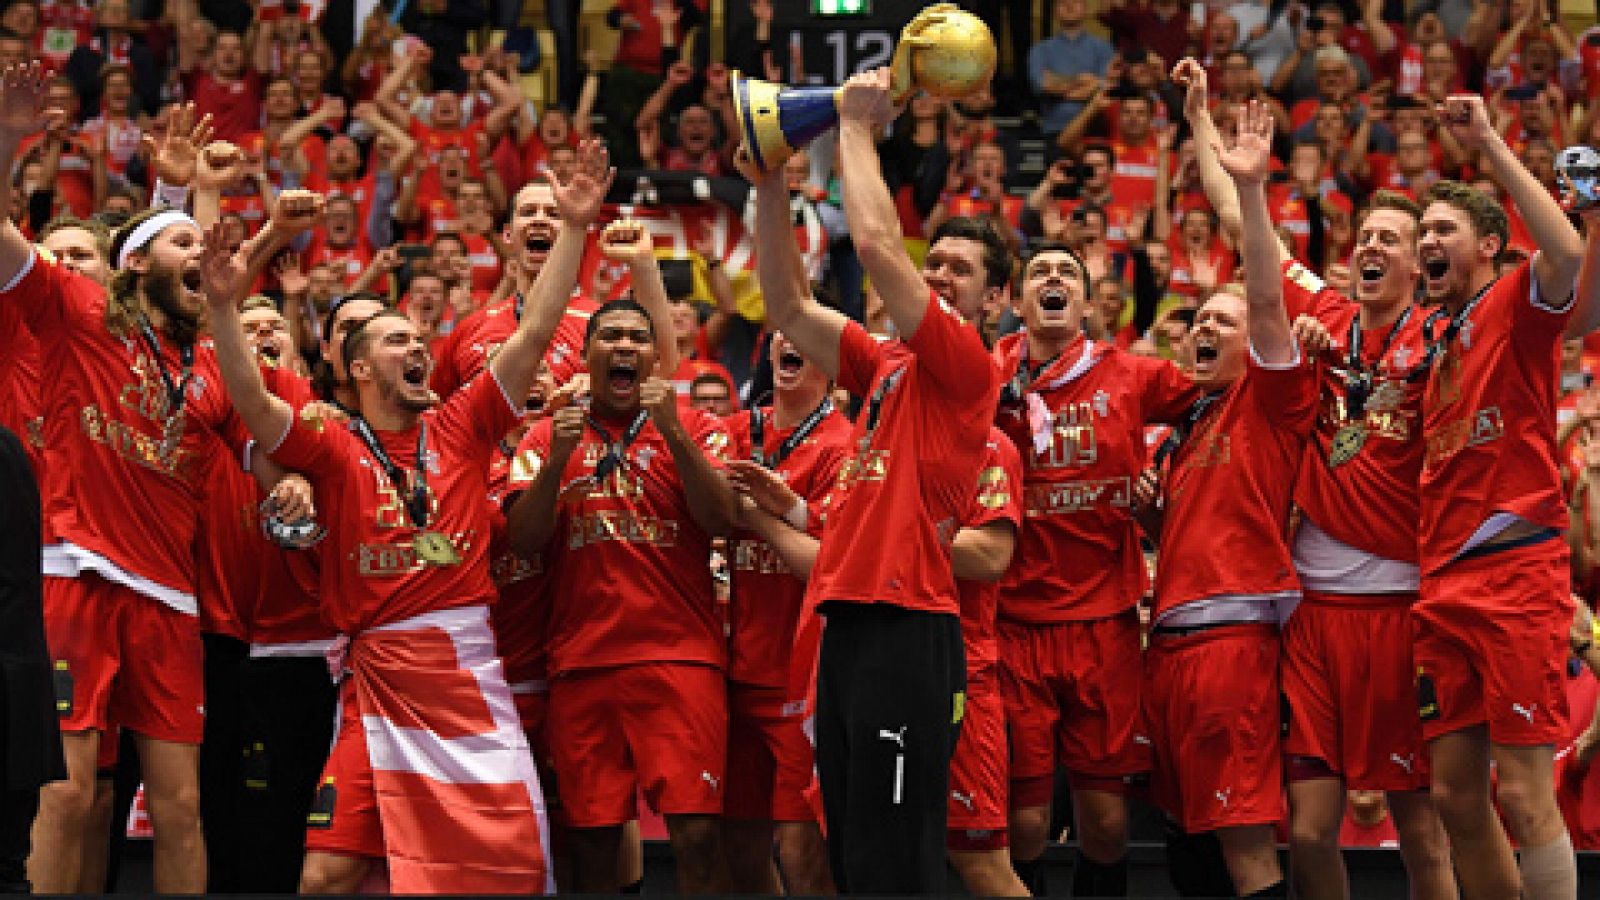 La selección danesa ha conquistado su primer mundial de balonmano al derrotar con claridad a Noruega por 31-22.